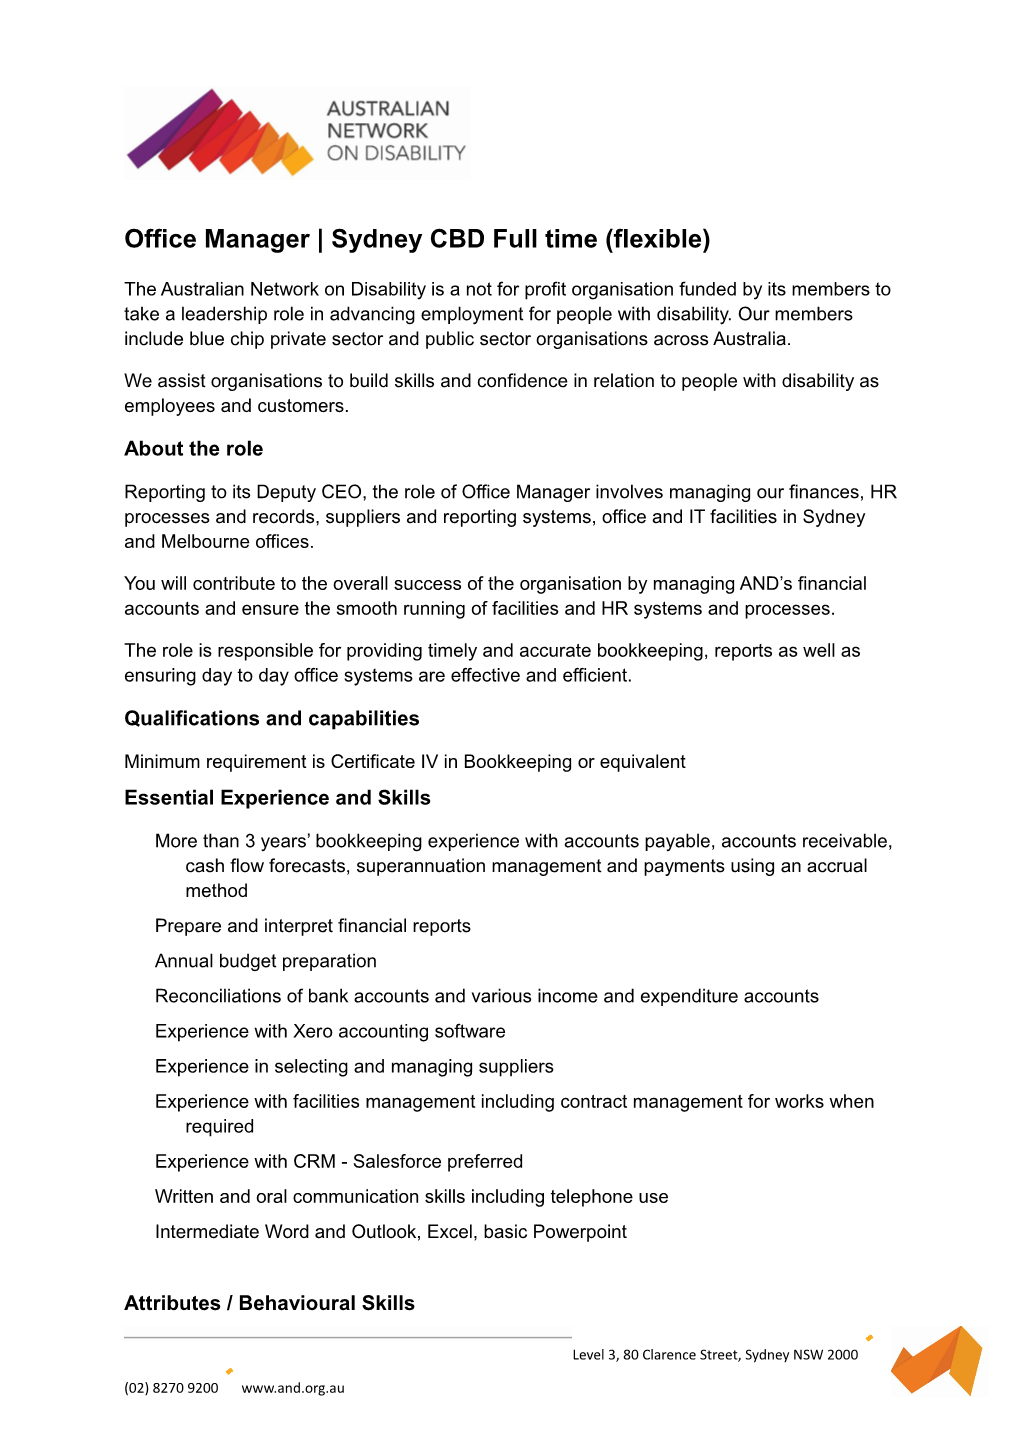 Office Manager Sydney CBD Full Time (Flexible)